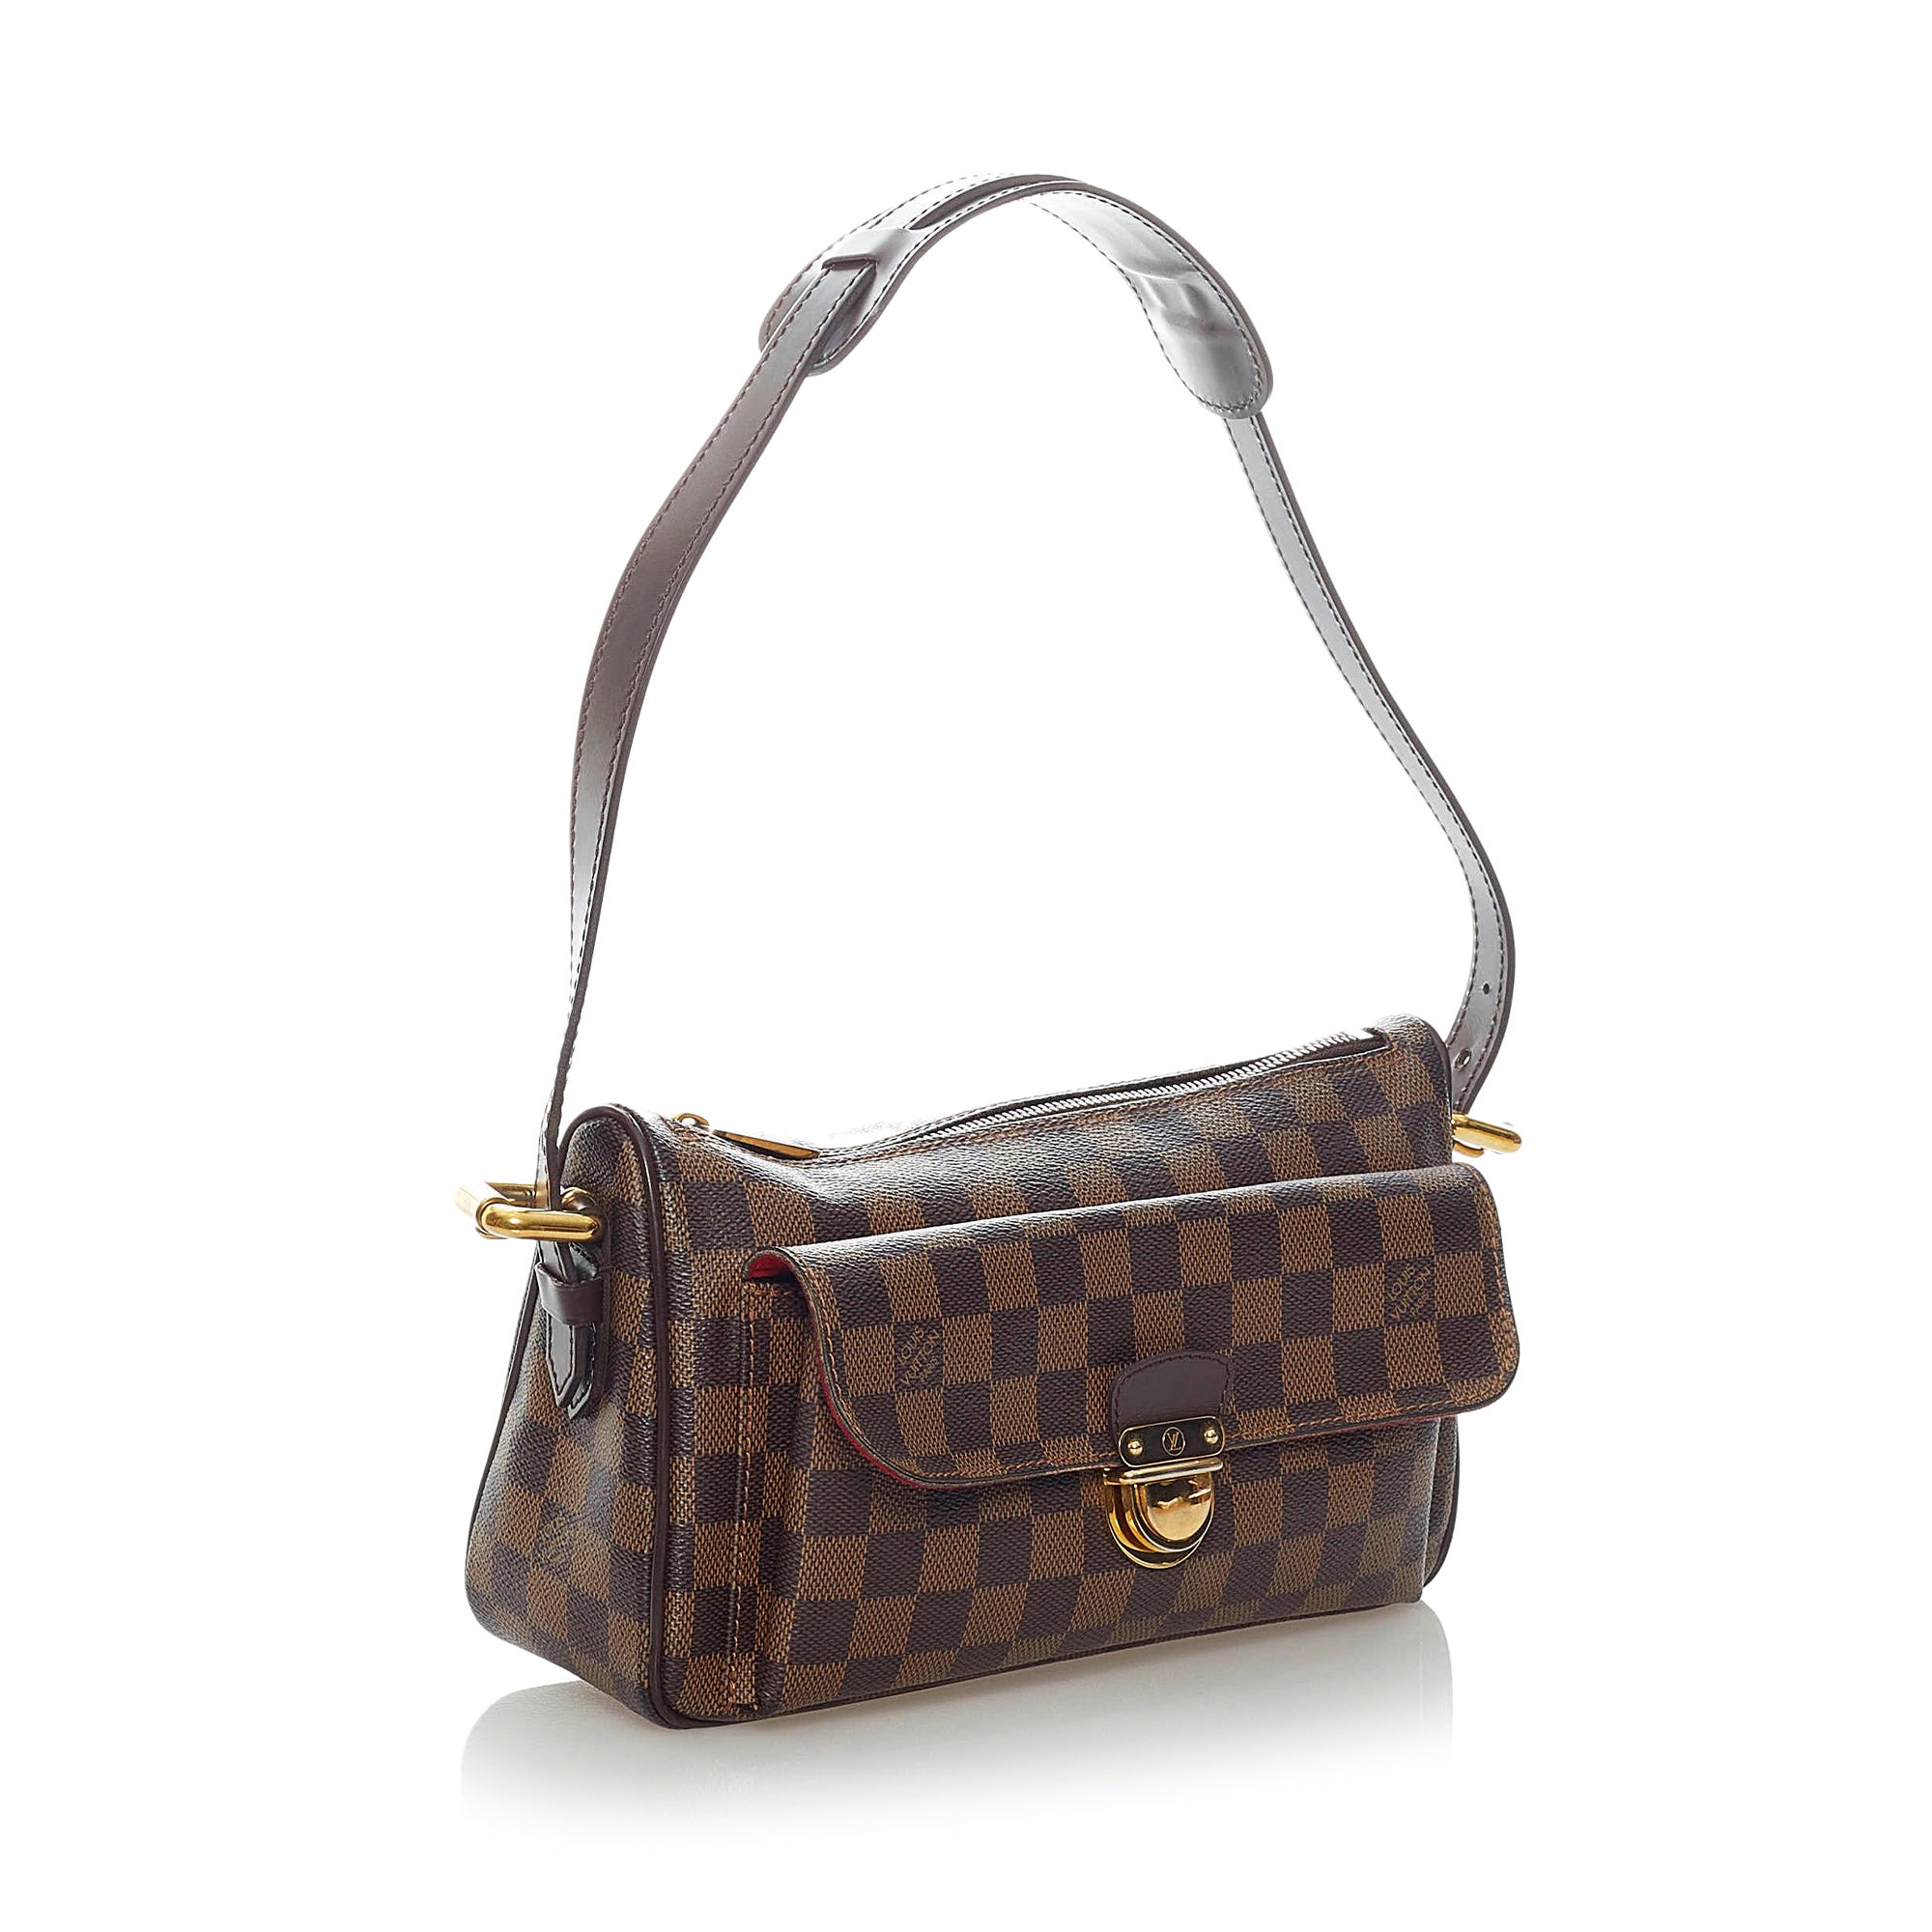 Preloved Louis Vuitton Damier Ebene Ravello GM Shoulder Bag MVGW6H9 060523 $120 OFF DEAL